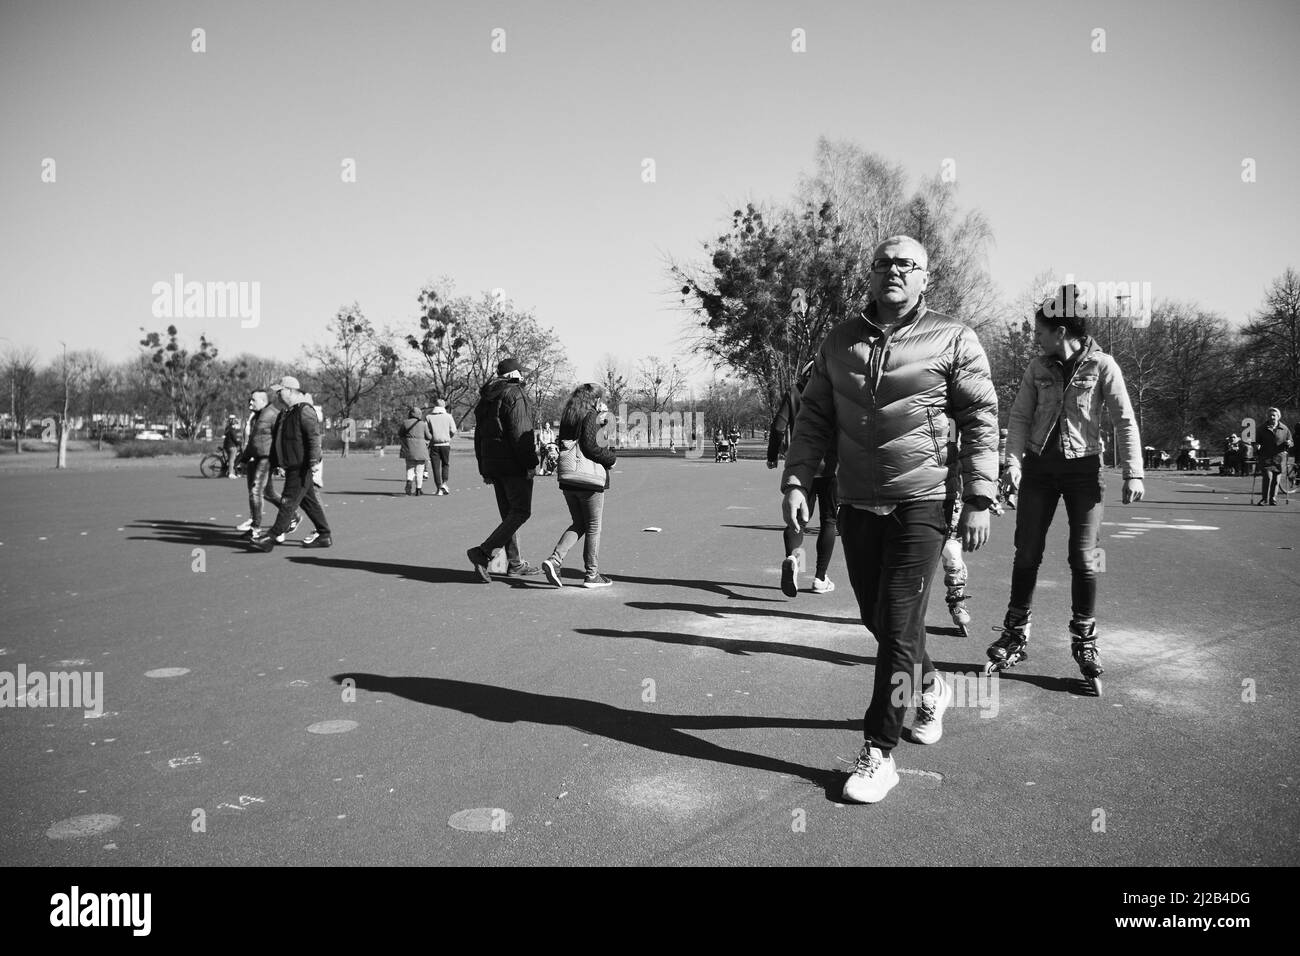 Une photo en échelle de gris des personnes qui se promo dans la zone asphaltée du parc Jan Pawla Banque D'Images